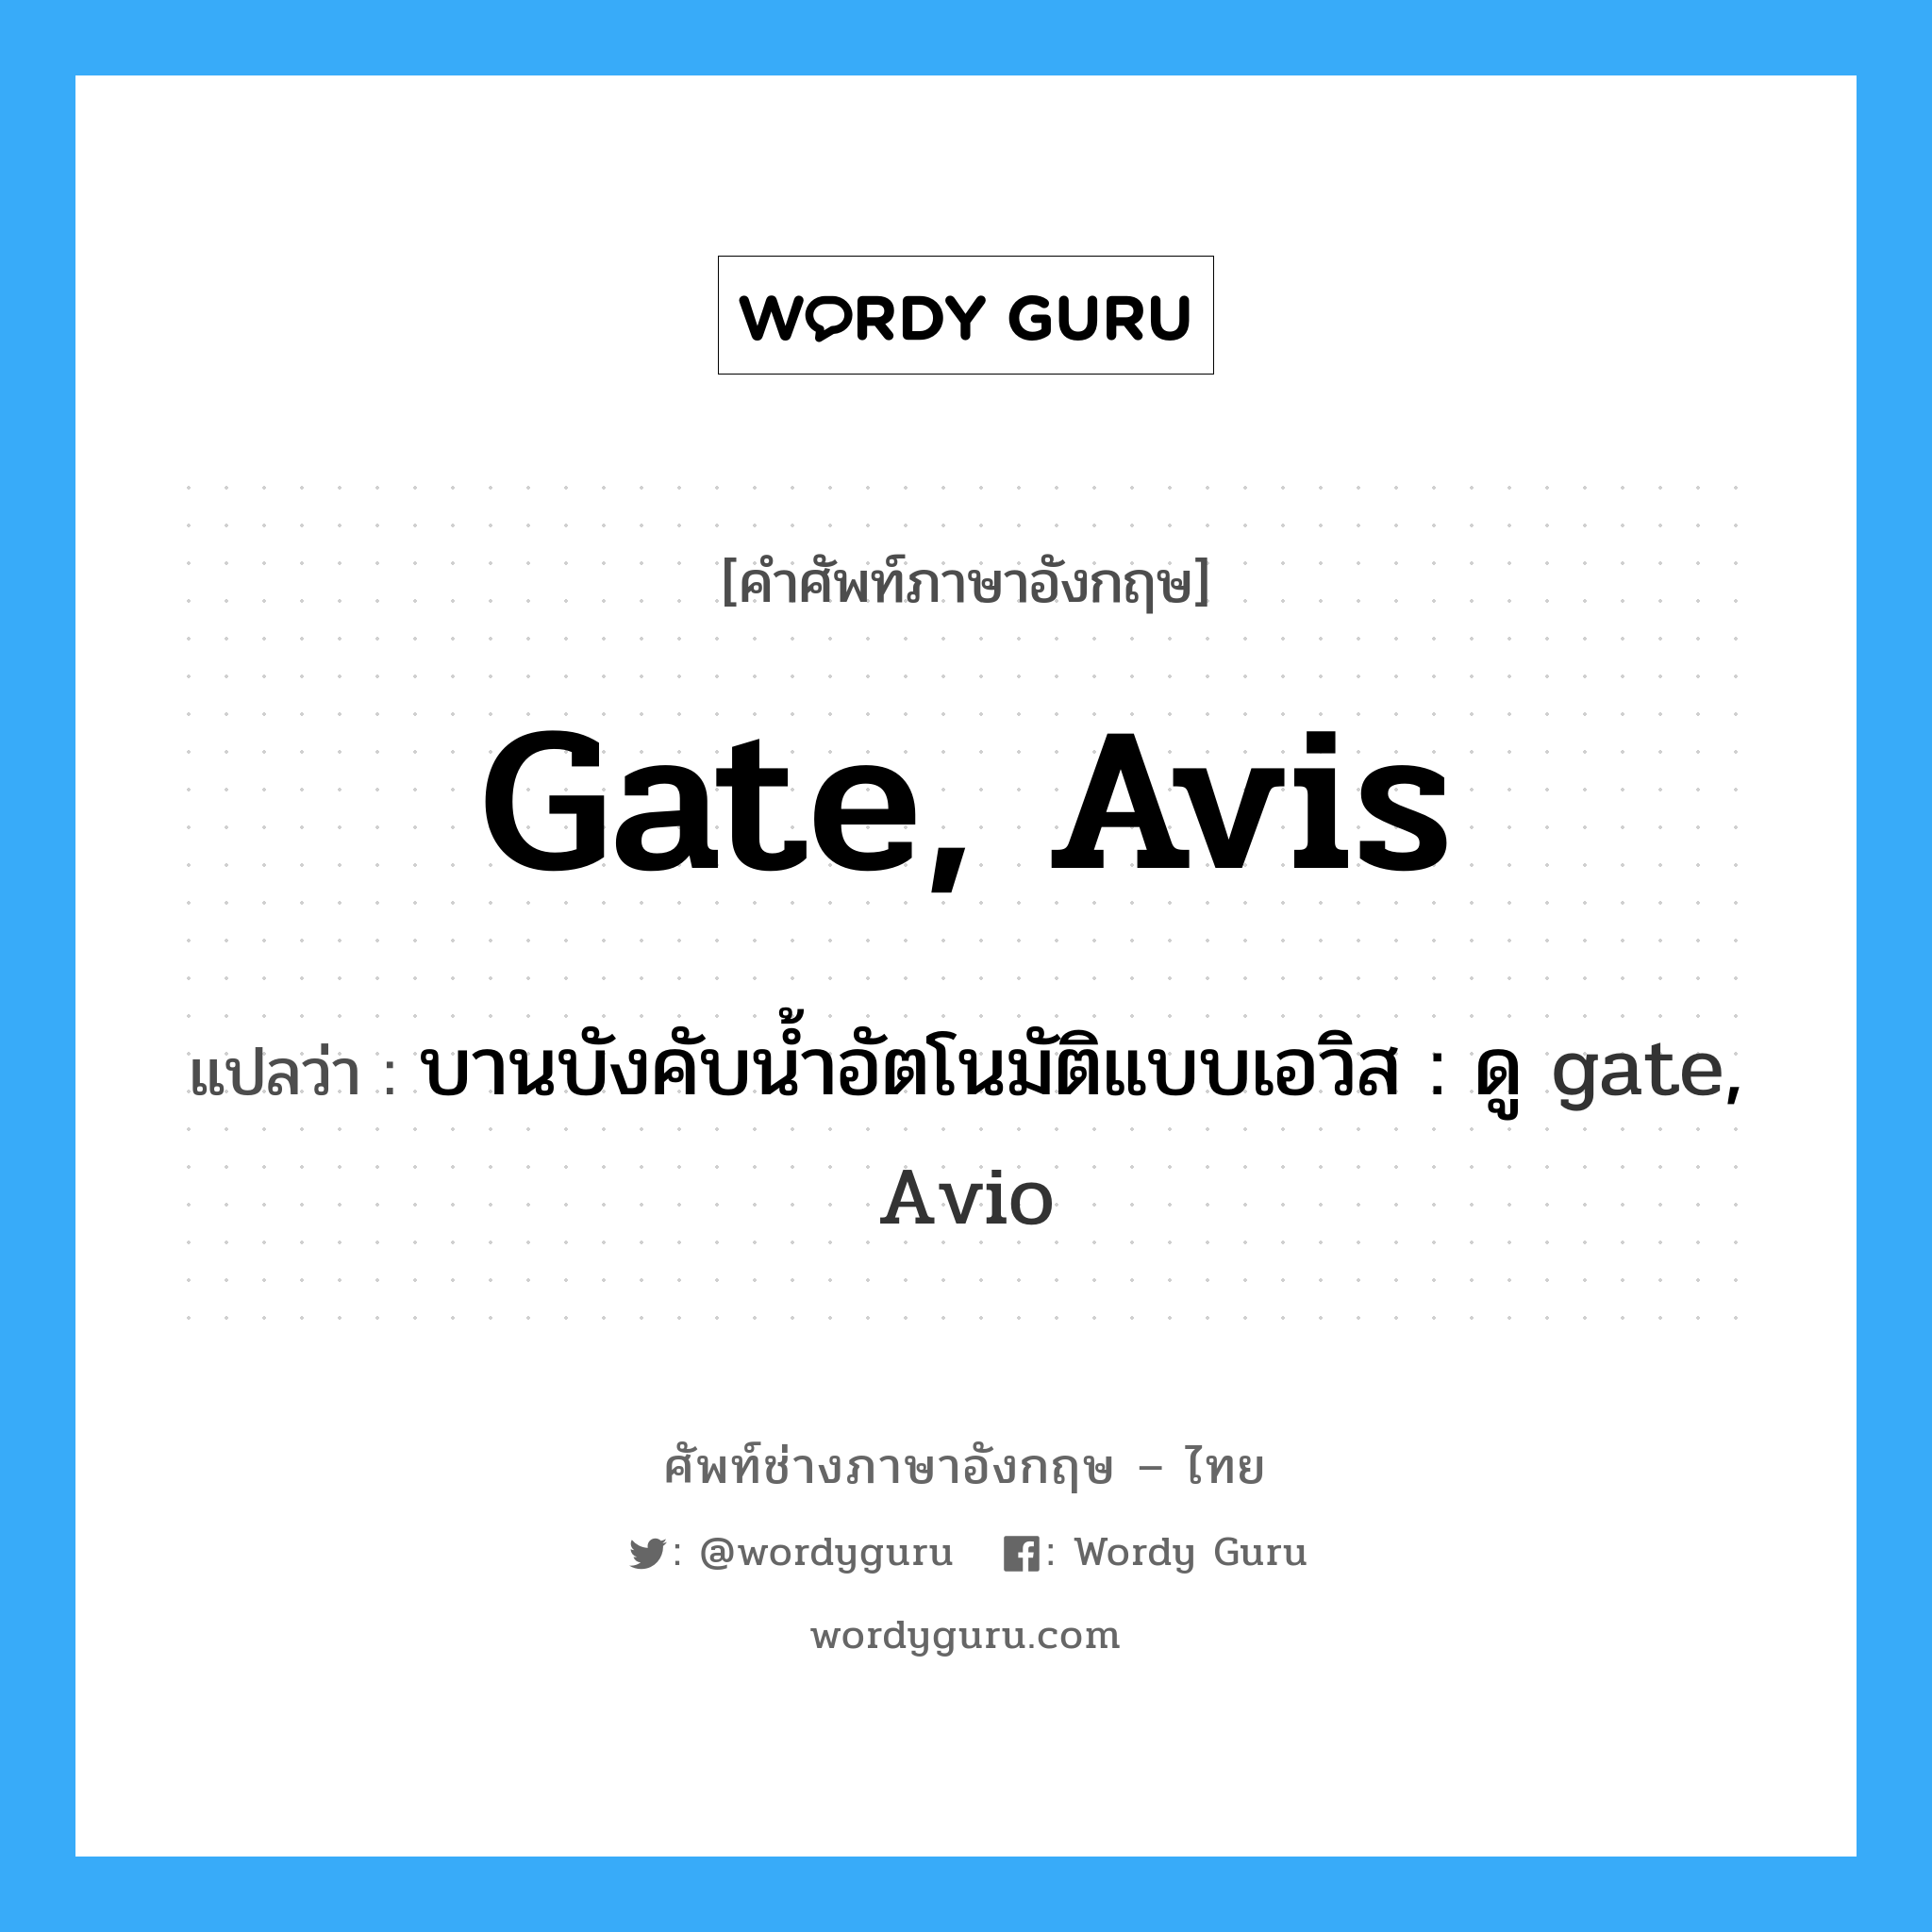 บานบังคับน้ำอัตโนมัติแบบเอวิส : ดู gate, Avio ภาษาอังกฤษ?, คำศัพท์ช่างภาษาอังกฤษ - ไทย บานบังคับน้ำอัตโนมัติแบบเอวิส : ดู gate, Avio คำศัพท์ภาษาอังกฤษ บานบังคับน้ำอัตโนมัติแบบเอวิส : ดู gate, Avio แปลว่า gate, Avis